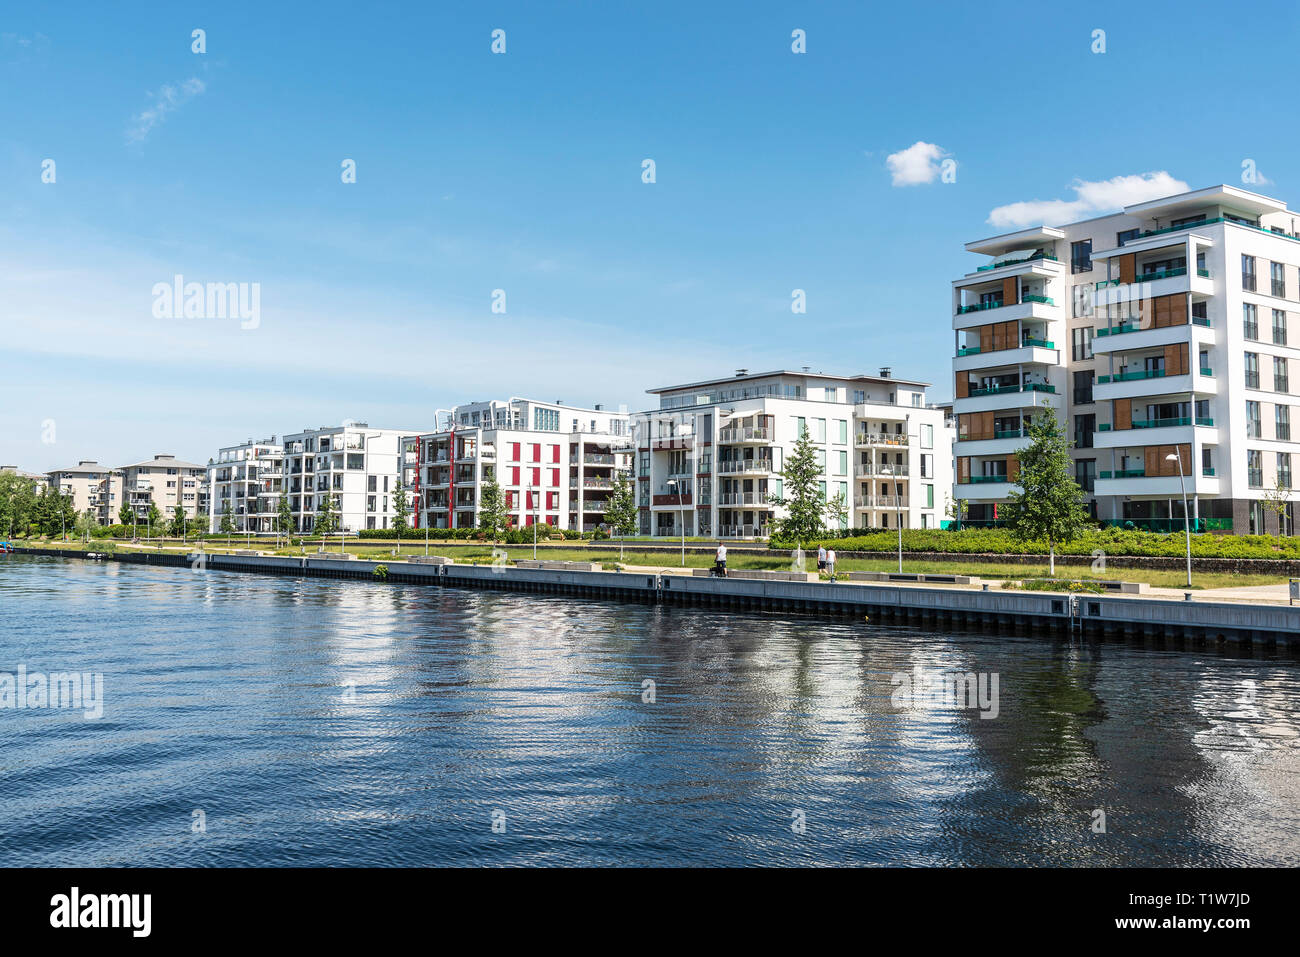 Area di sviluppo, Ziegelsee, sul lago Schwerin, Meclemburgo-Pomerania Occidentale, Germania Foto Stock